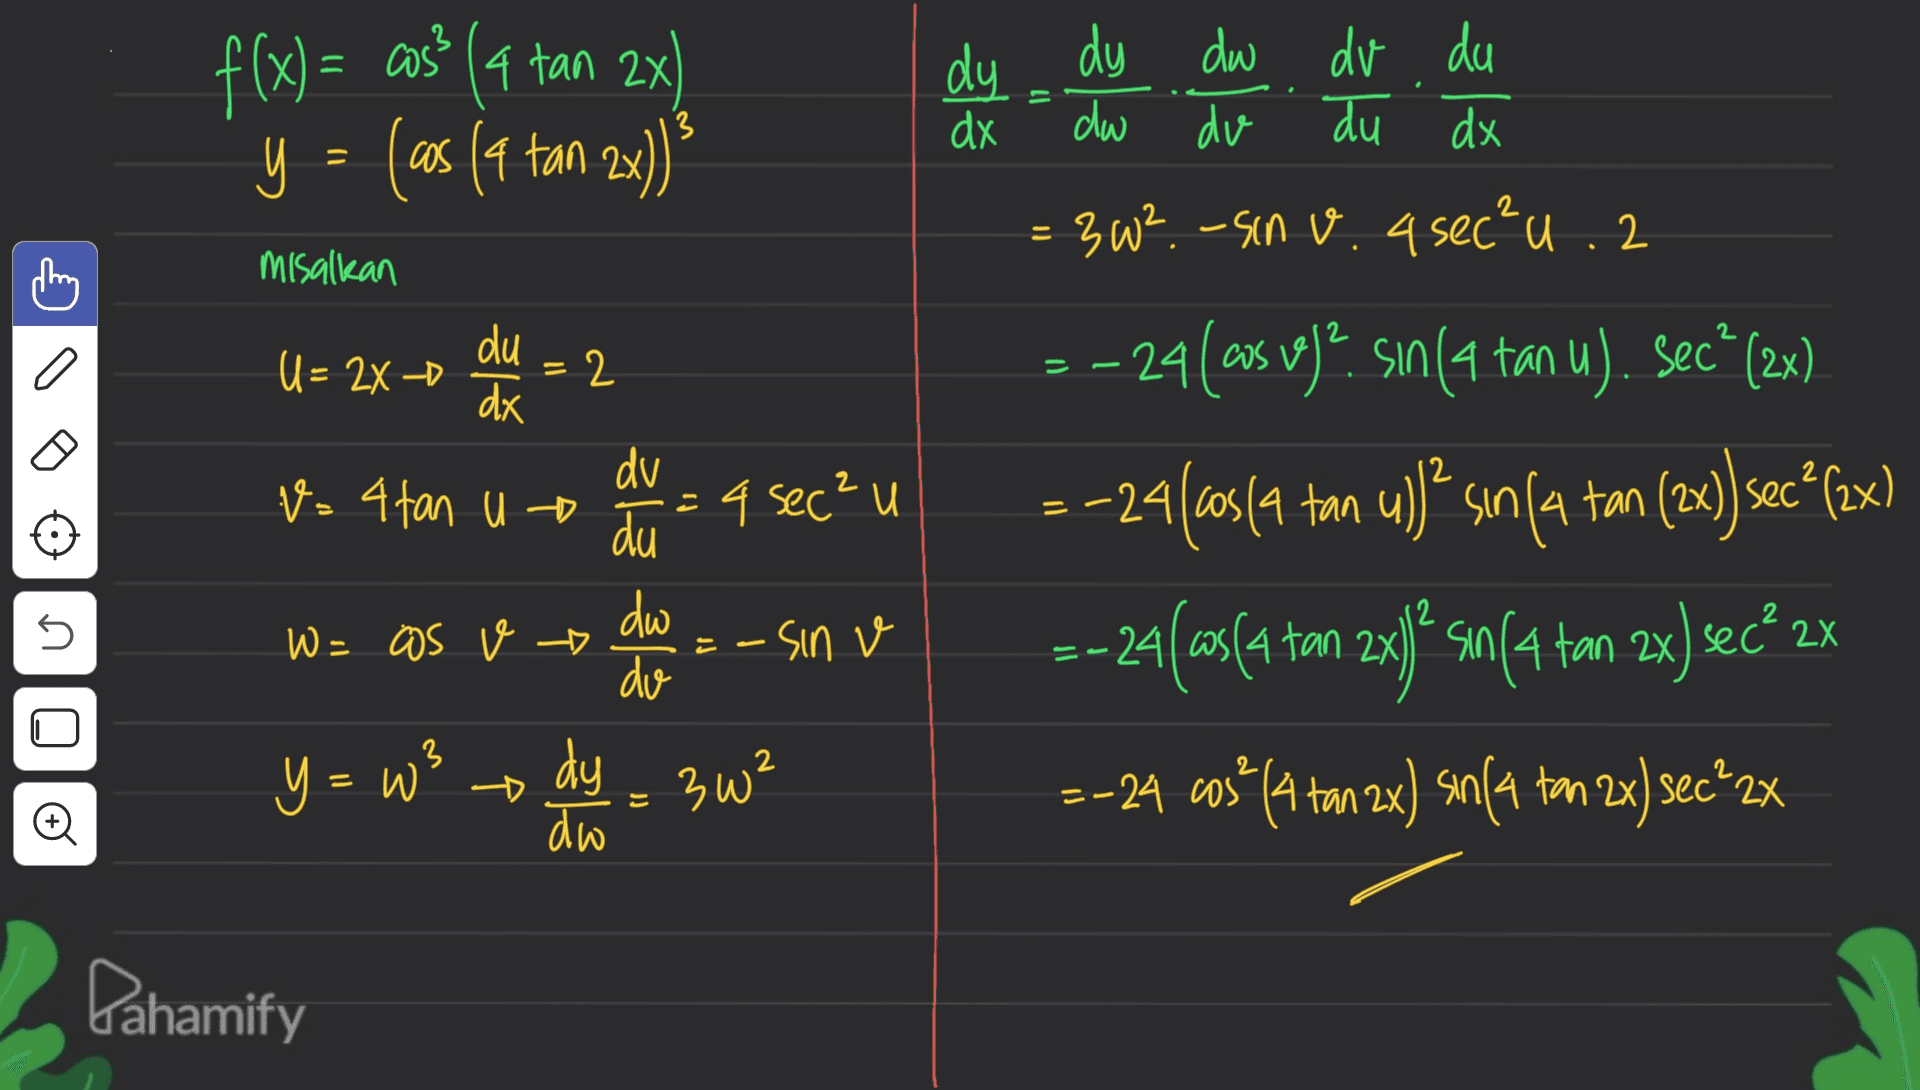 f(x) = cos? (4 tan x) y = (as (a tan 2x) dy dx 11 3 dy dw dv du dw dv. du dx = 3W ²-sin v. 4 sec²u. 2 2 misalkan U= 2x -D du dx 2 = = V=4 tan u o dv du = 4 sec²u dw - sin v do – 24(cos vej?. sın(a tan u). Sec" (2x) = -24(63(4 tan ul)? sin(a tan (2x) secº(2x) =-24(as(a ton 2xg ? su(4 ton 3x) Sec® 2X =-24 wus* (a ton 2x) sm14 tm 2x) sec+2x 5 W = as v 3 Y = w dy - 3w² » o do Dahamify 